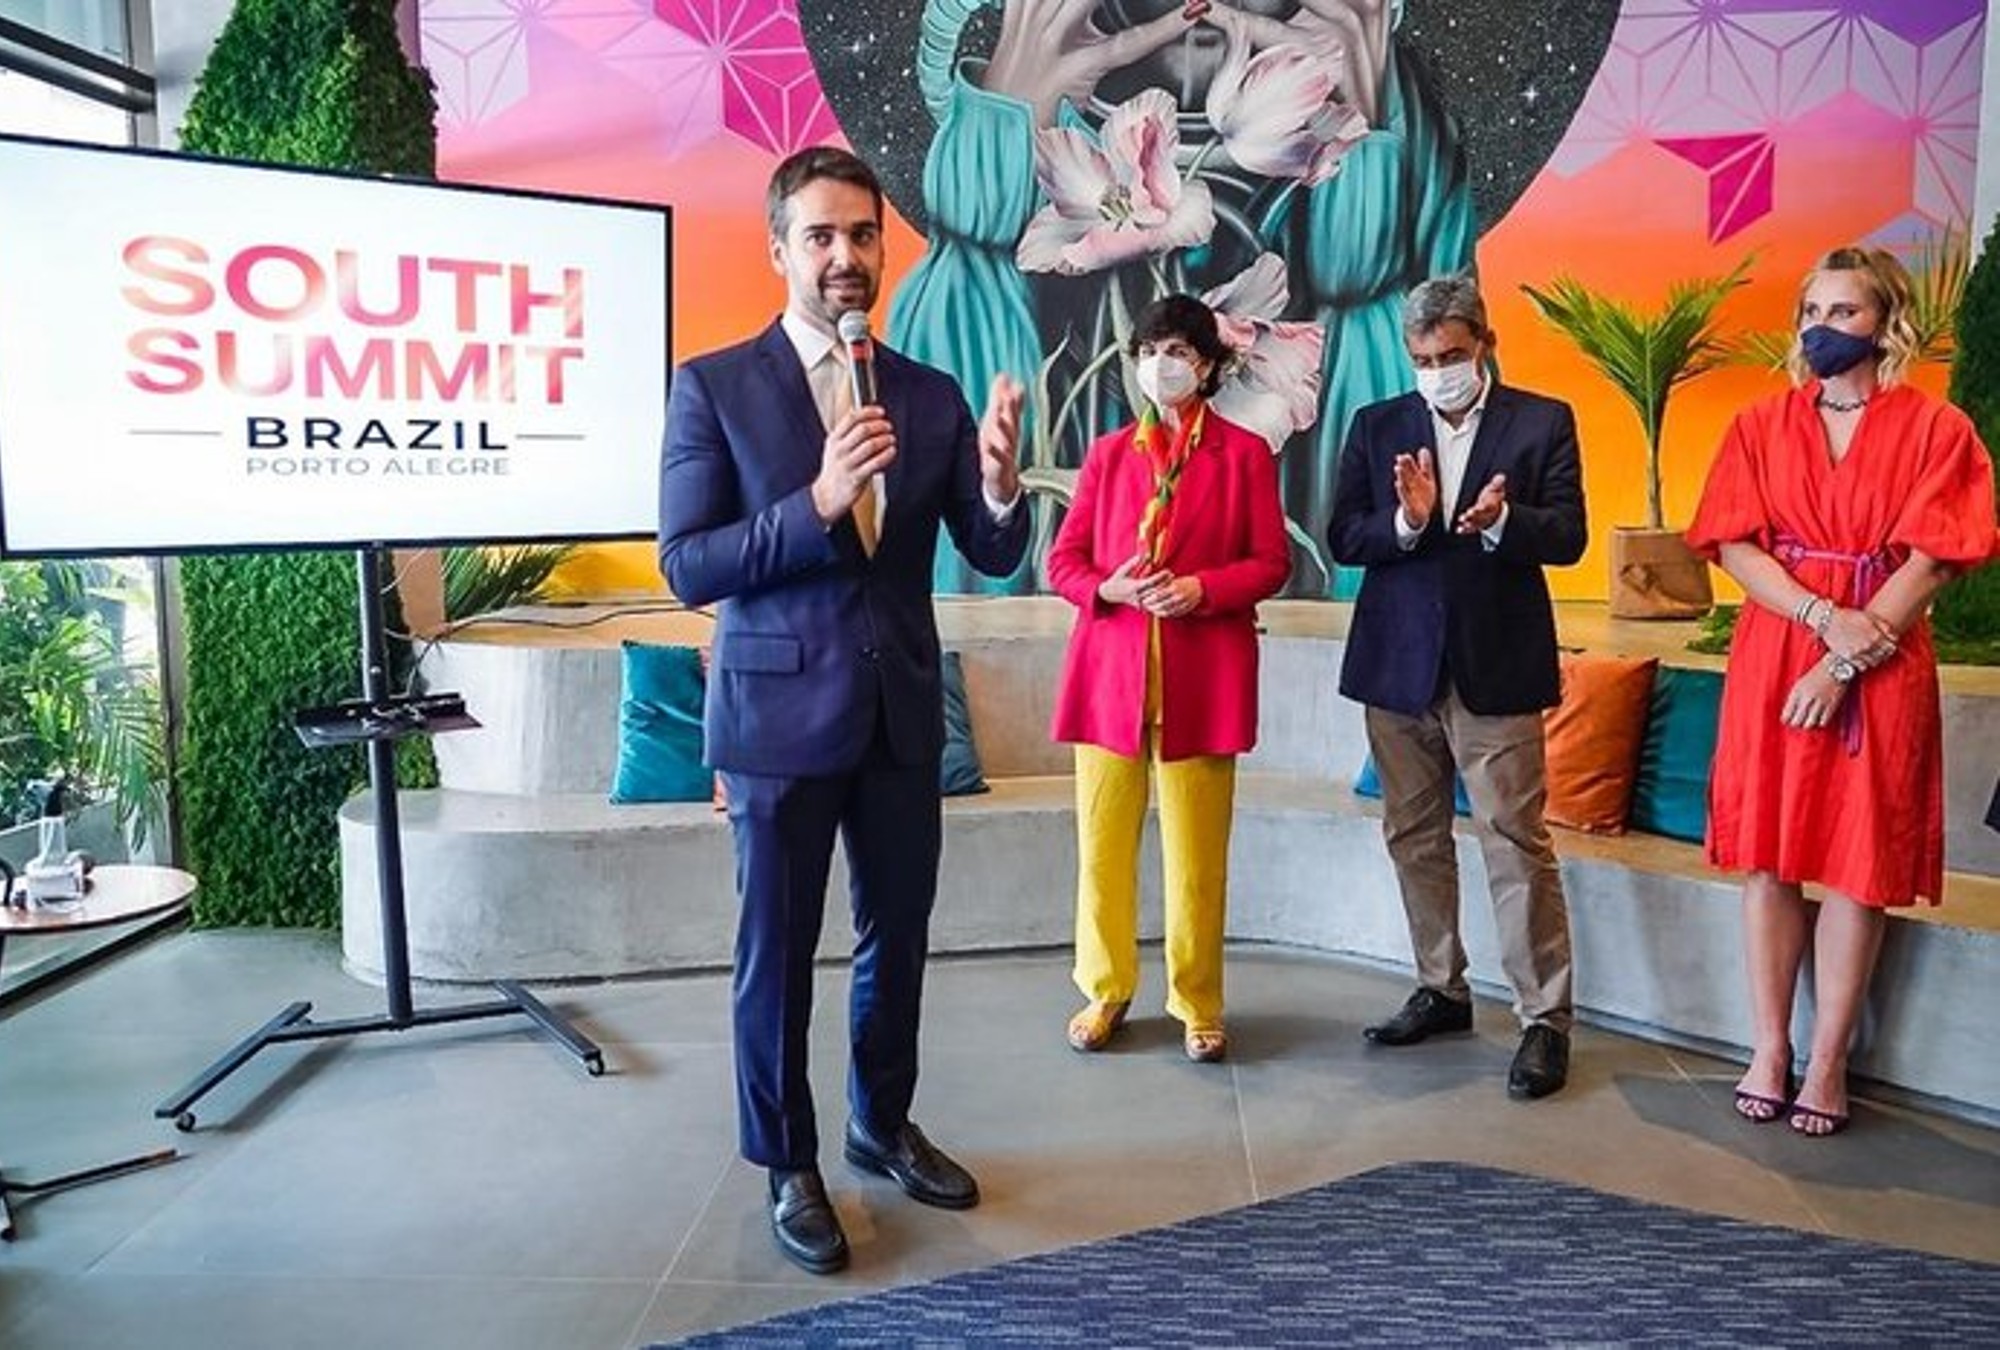 South Summit se celebrará en Porto Alegre.